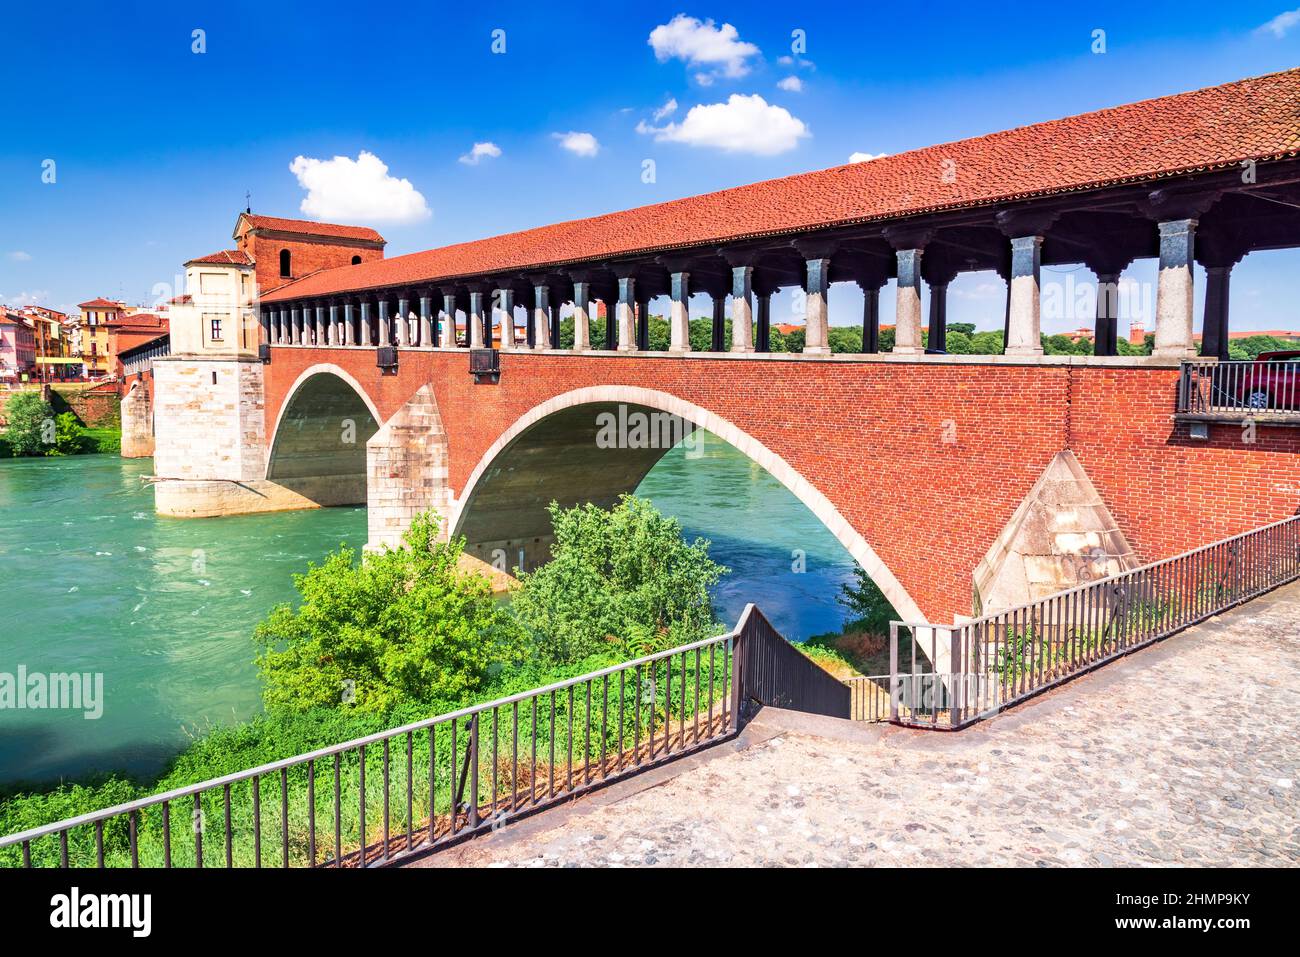 Pavia, Italy. Ponte Coperto (covered bridge) or the Ponte Vecchio a stone arch bridge over the Ticino River. Stock Photo